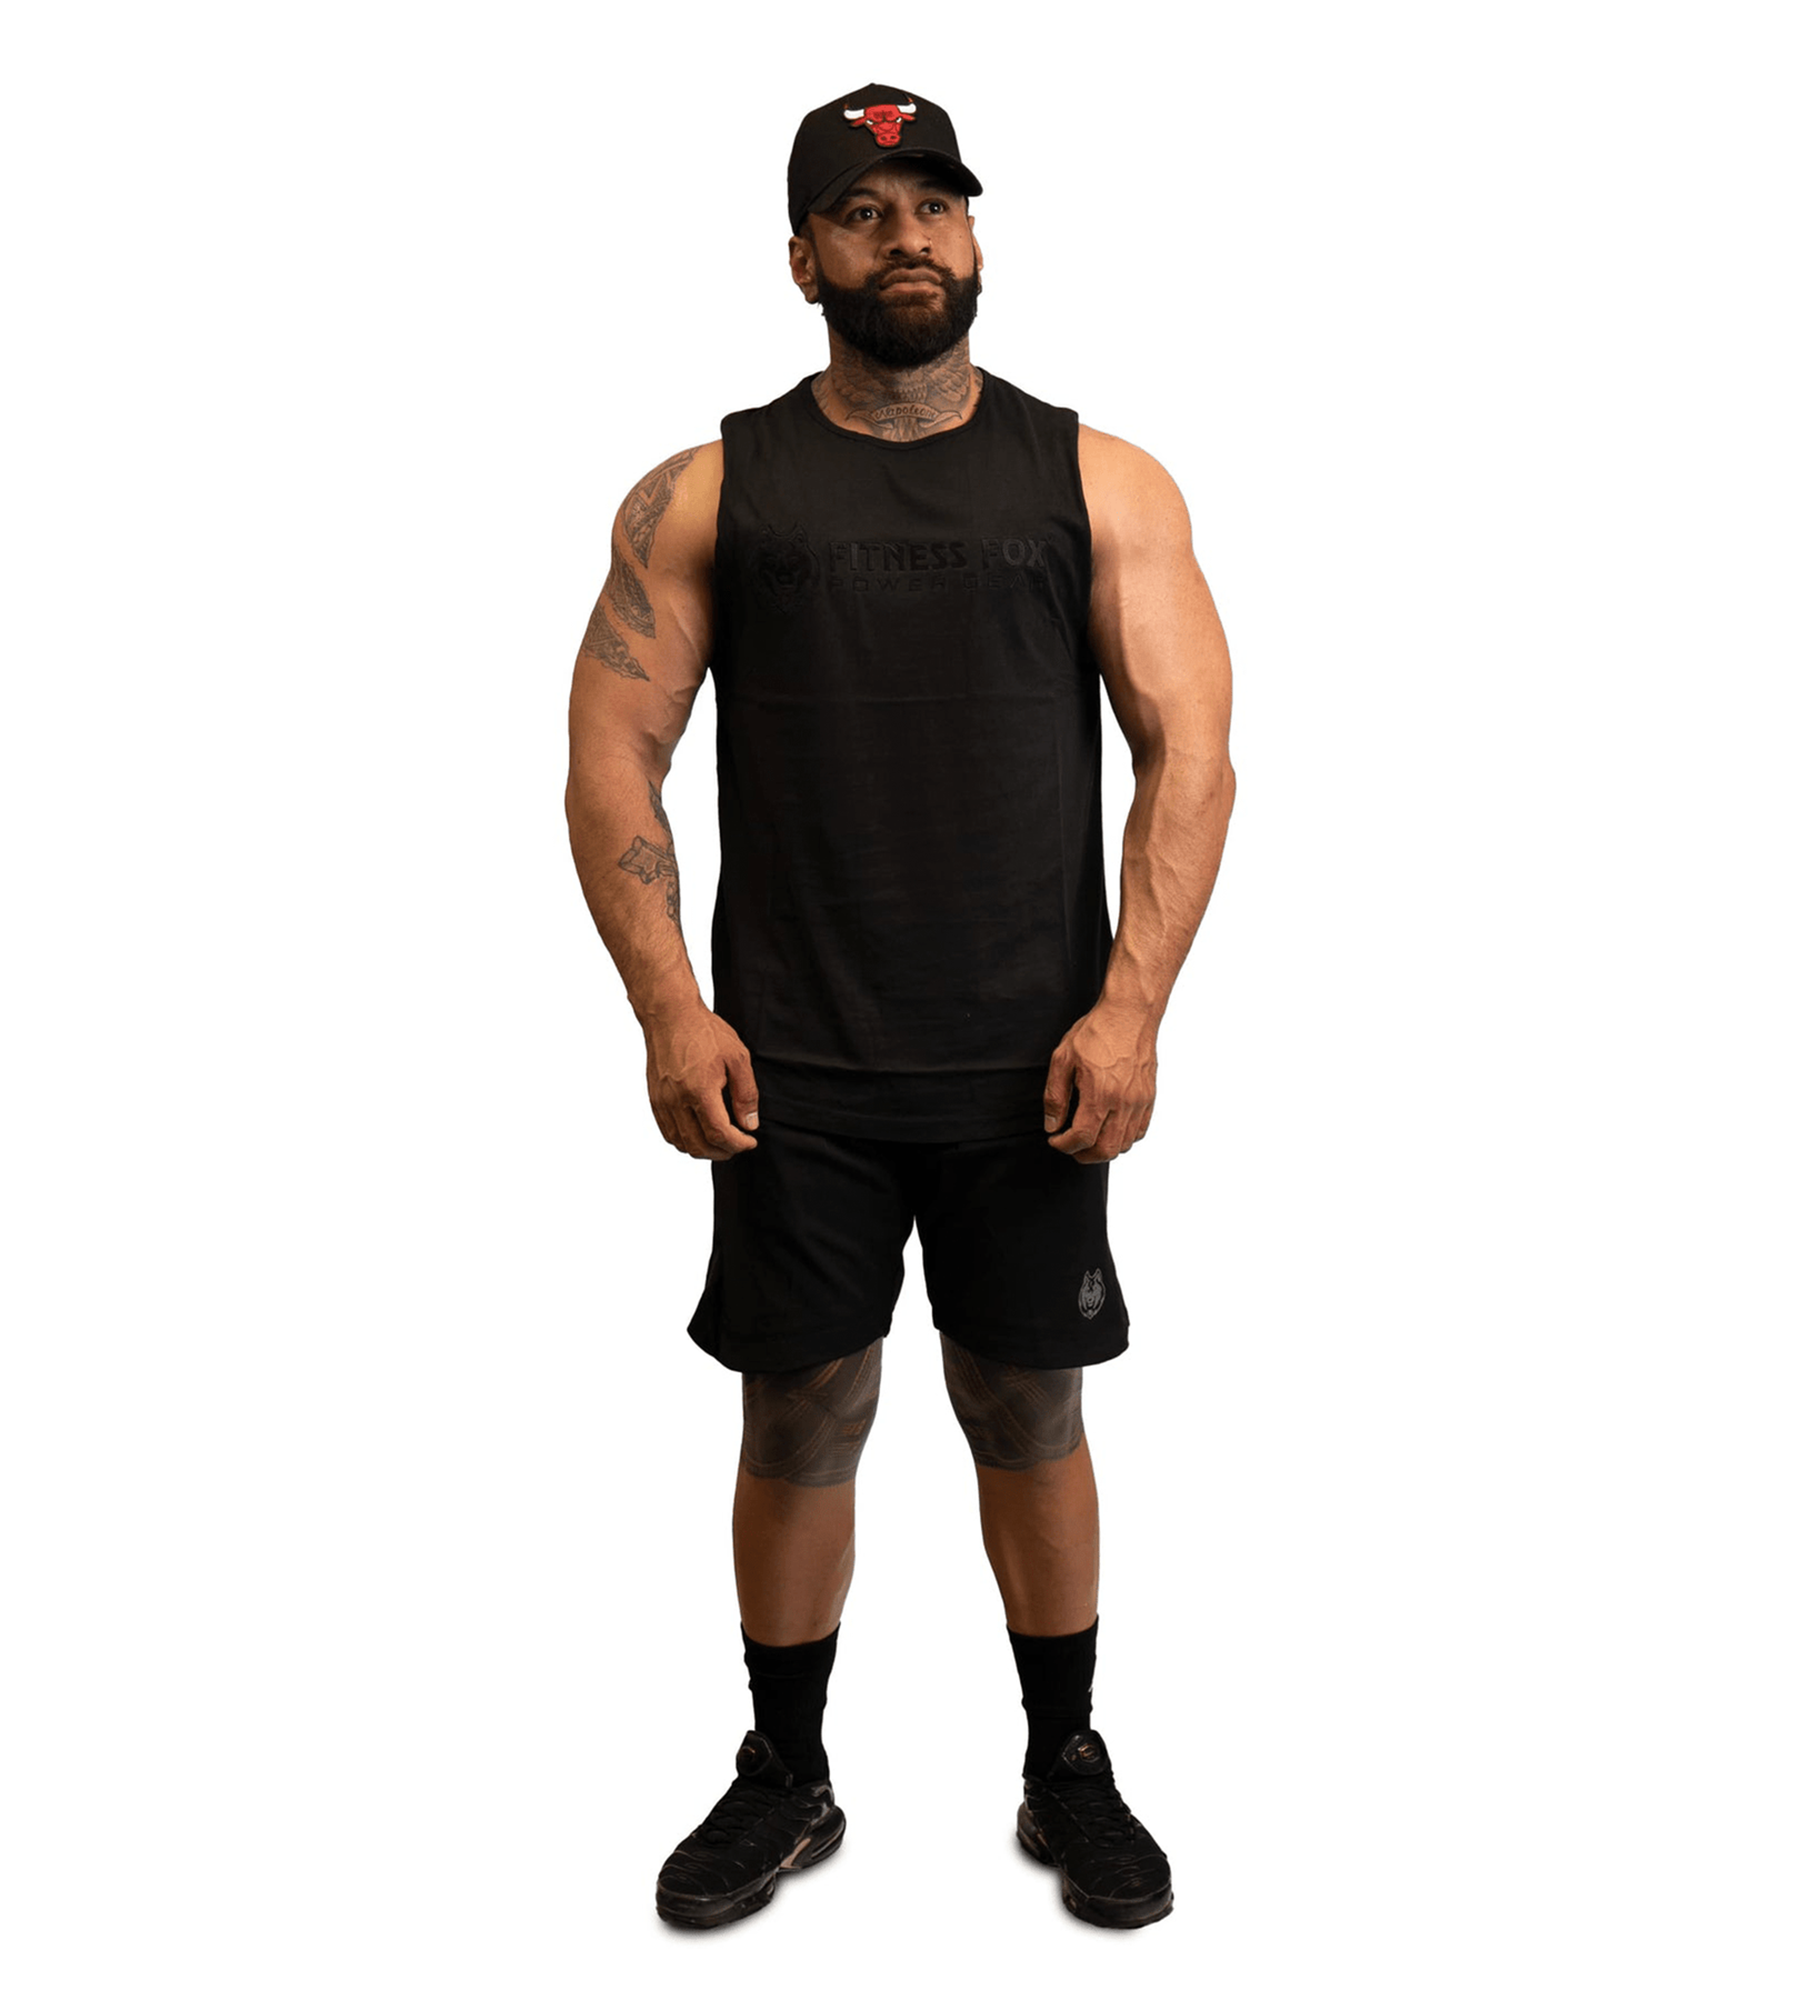 FitnessFox Black Muscle Tank